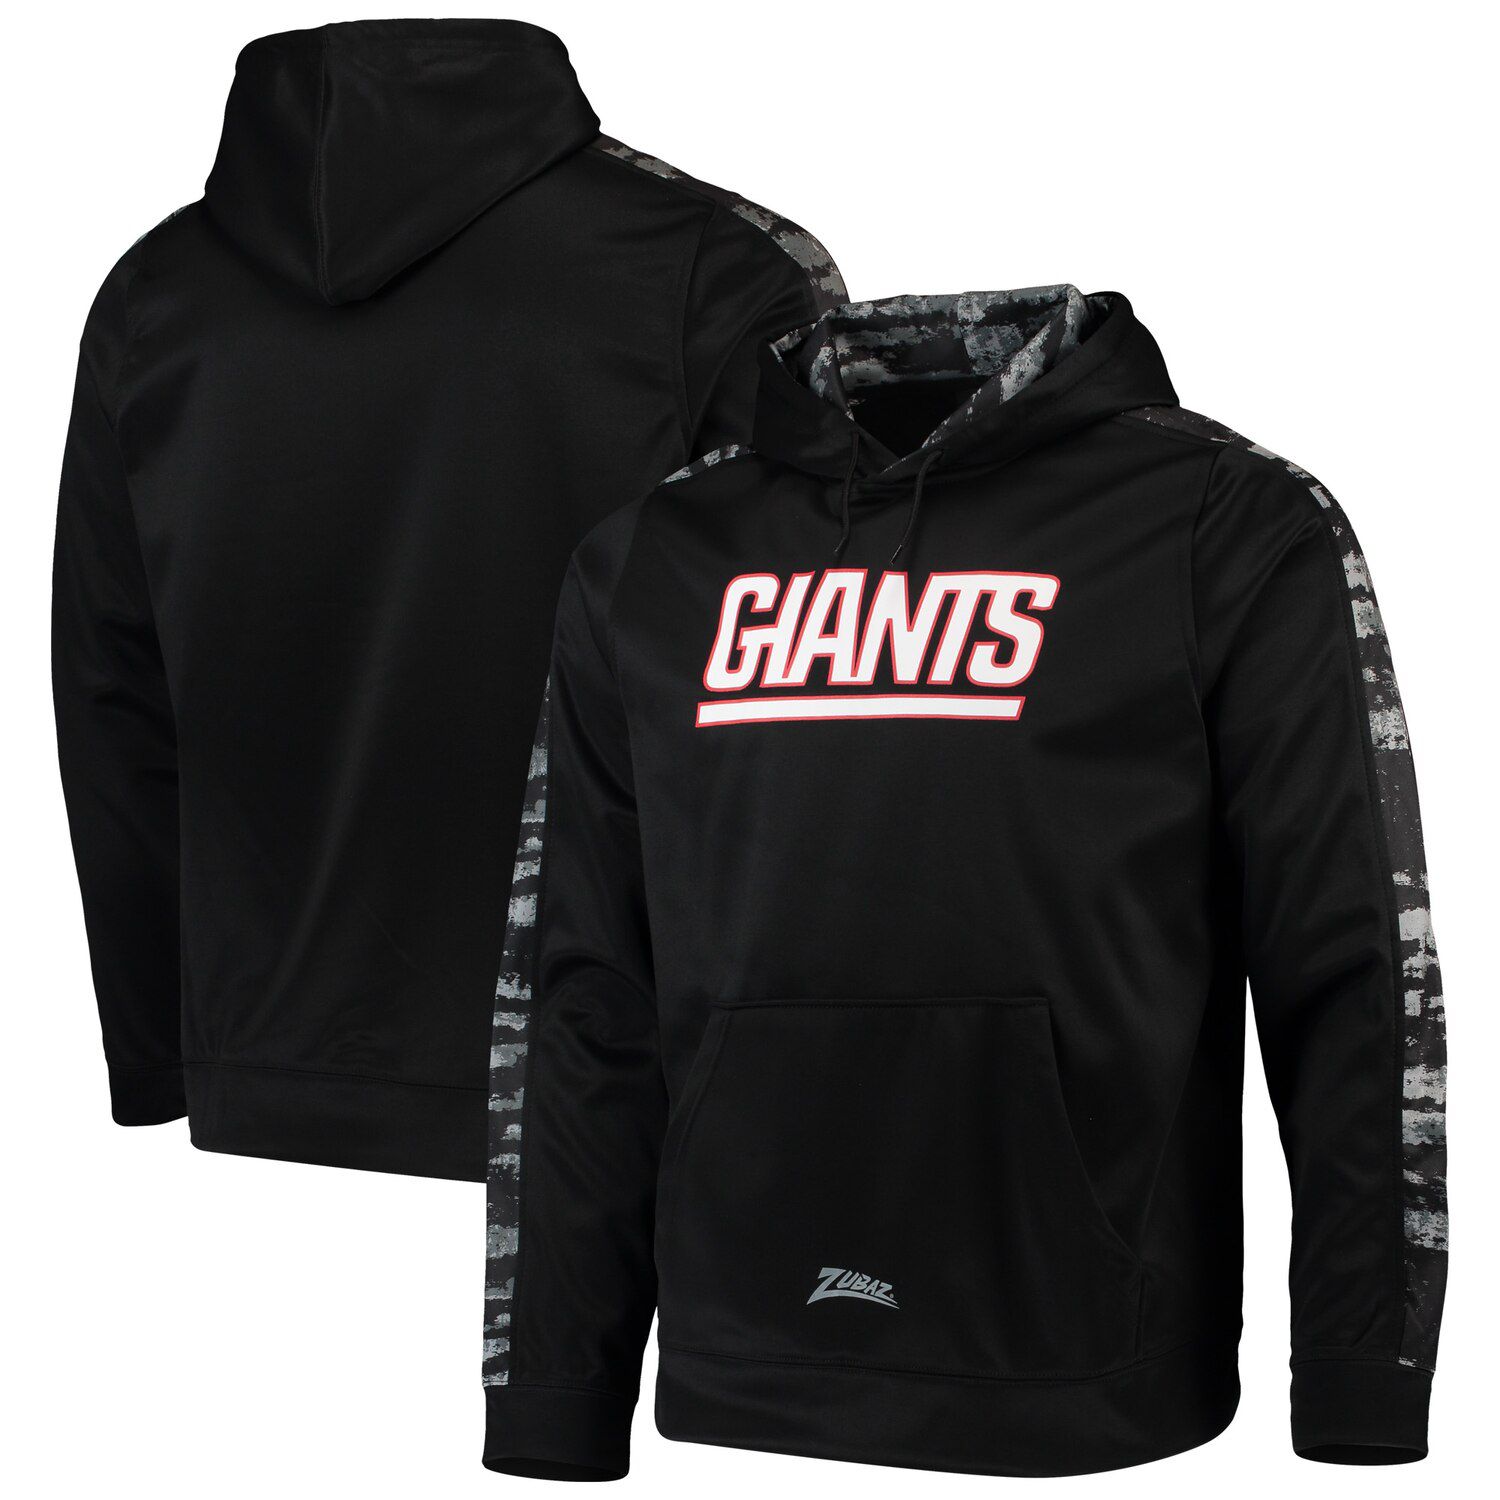 black new york giants hoodie